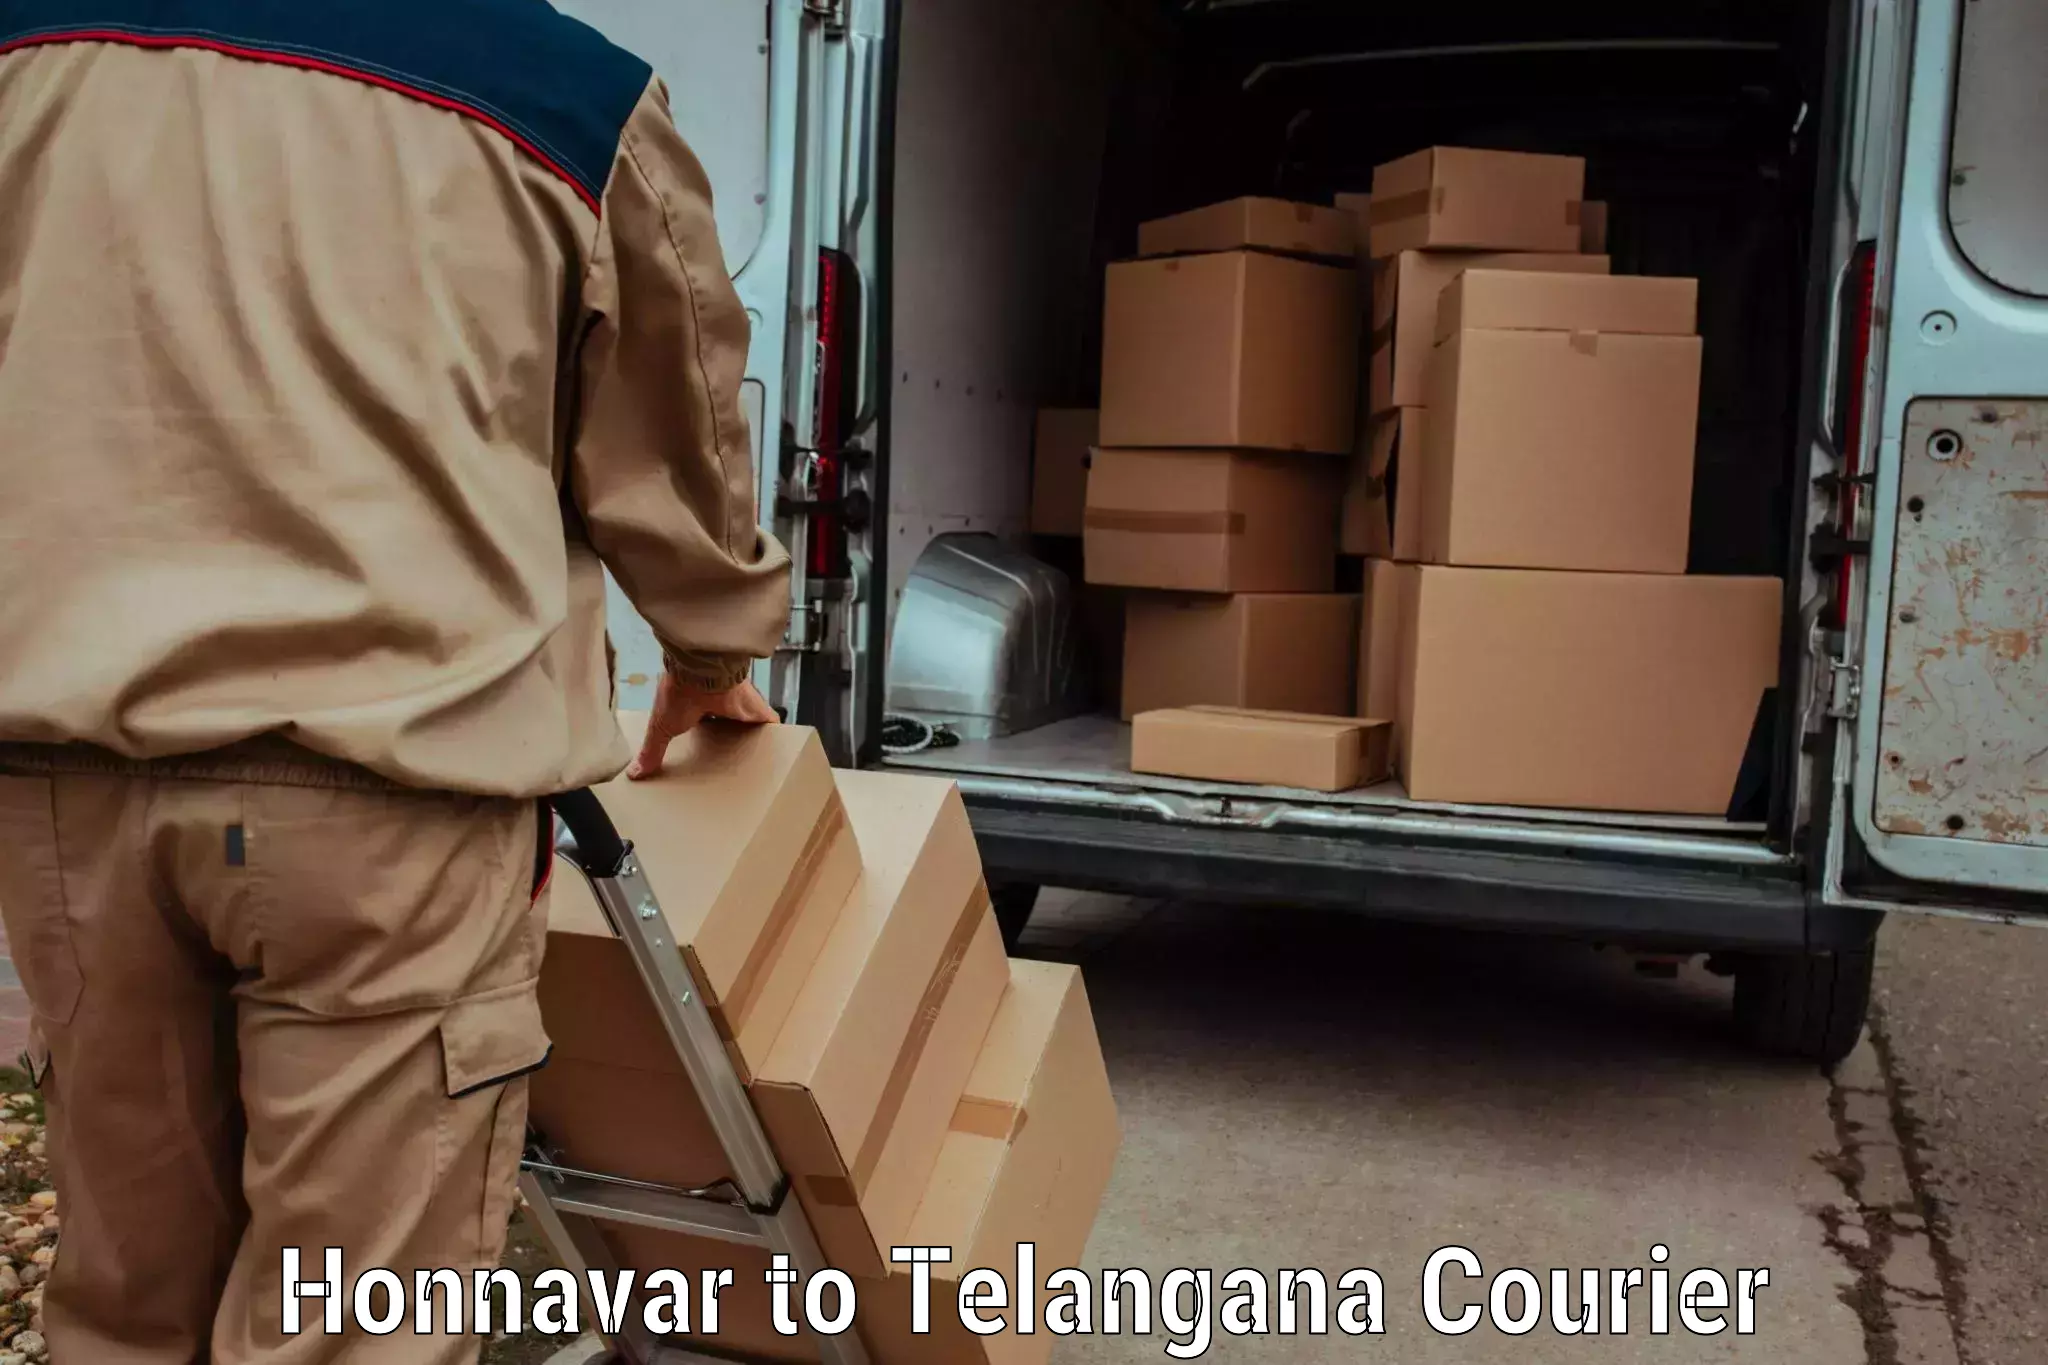 Express logistics providers Honnavar to Madhavaram